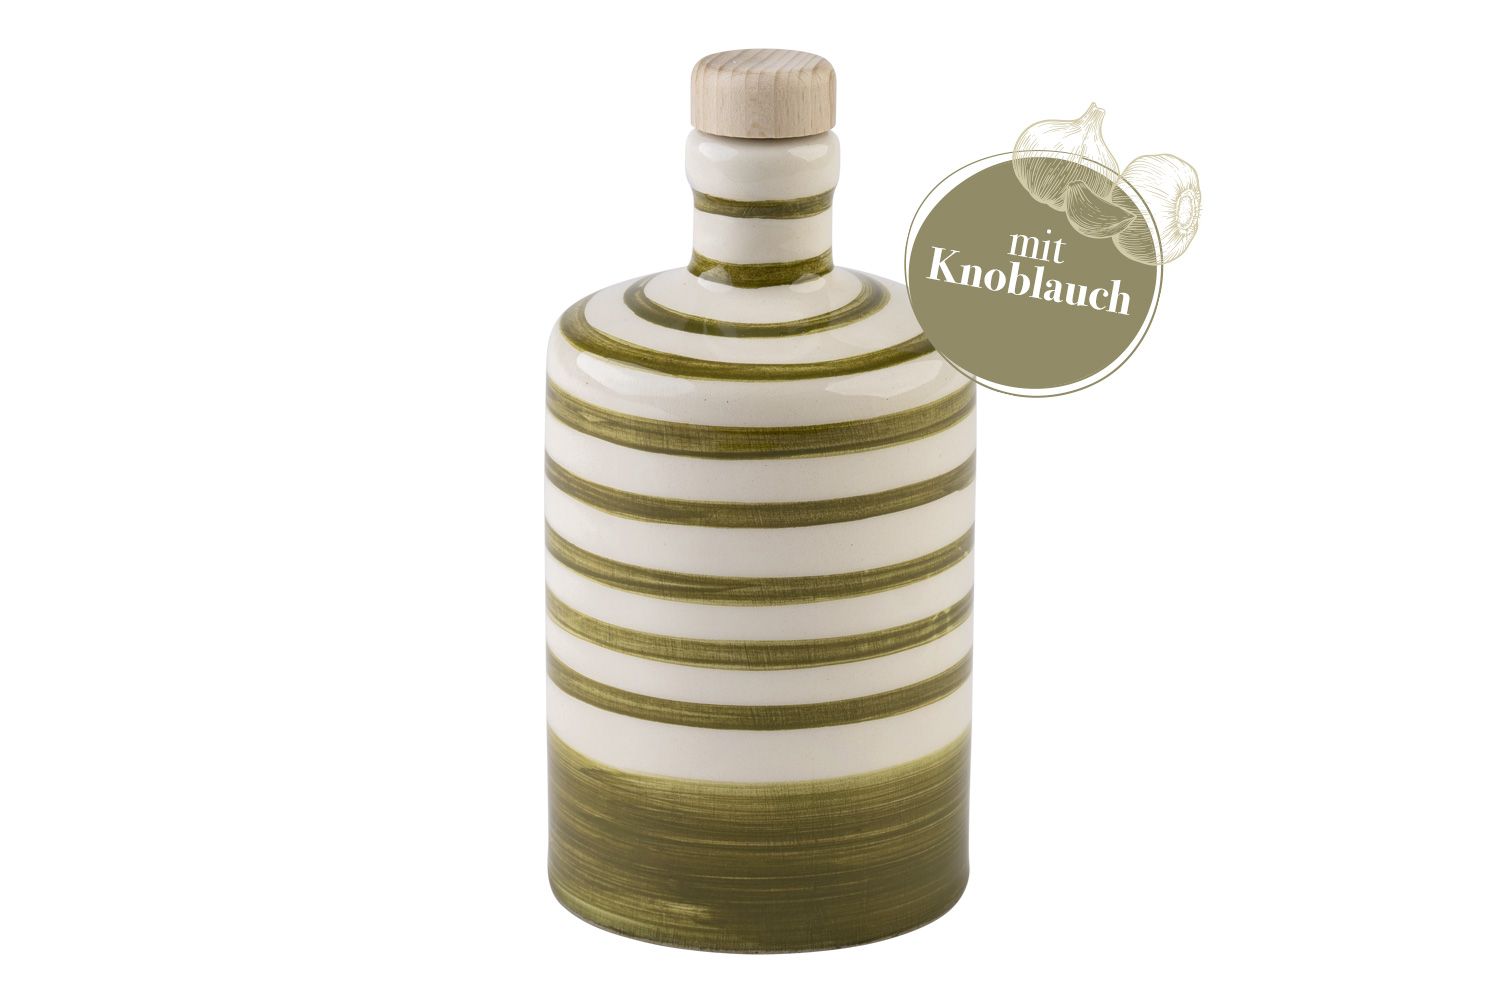 Eine runde, grün-gestreifte Flasche mit Knoblauch-Olivenöl